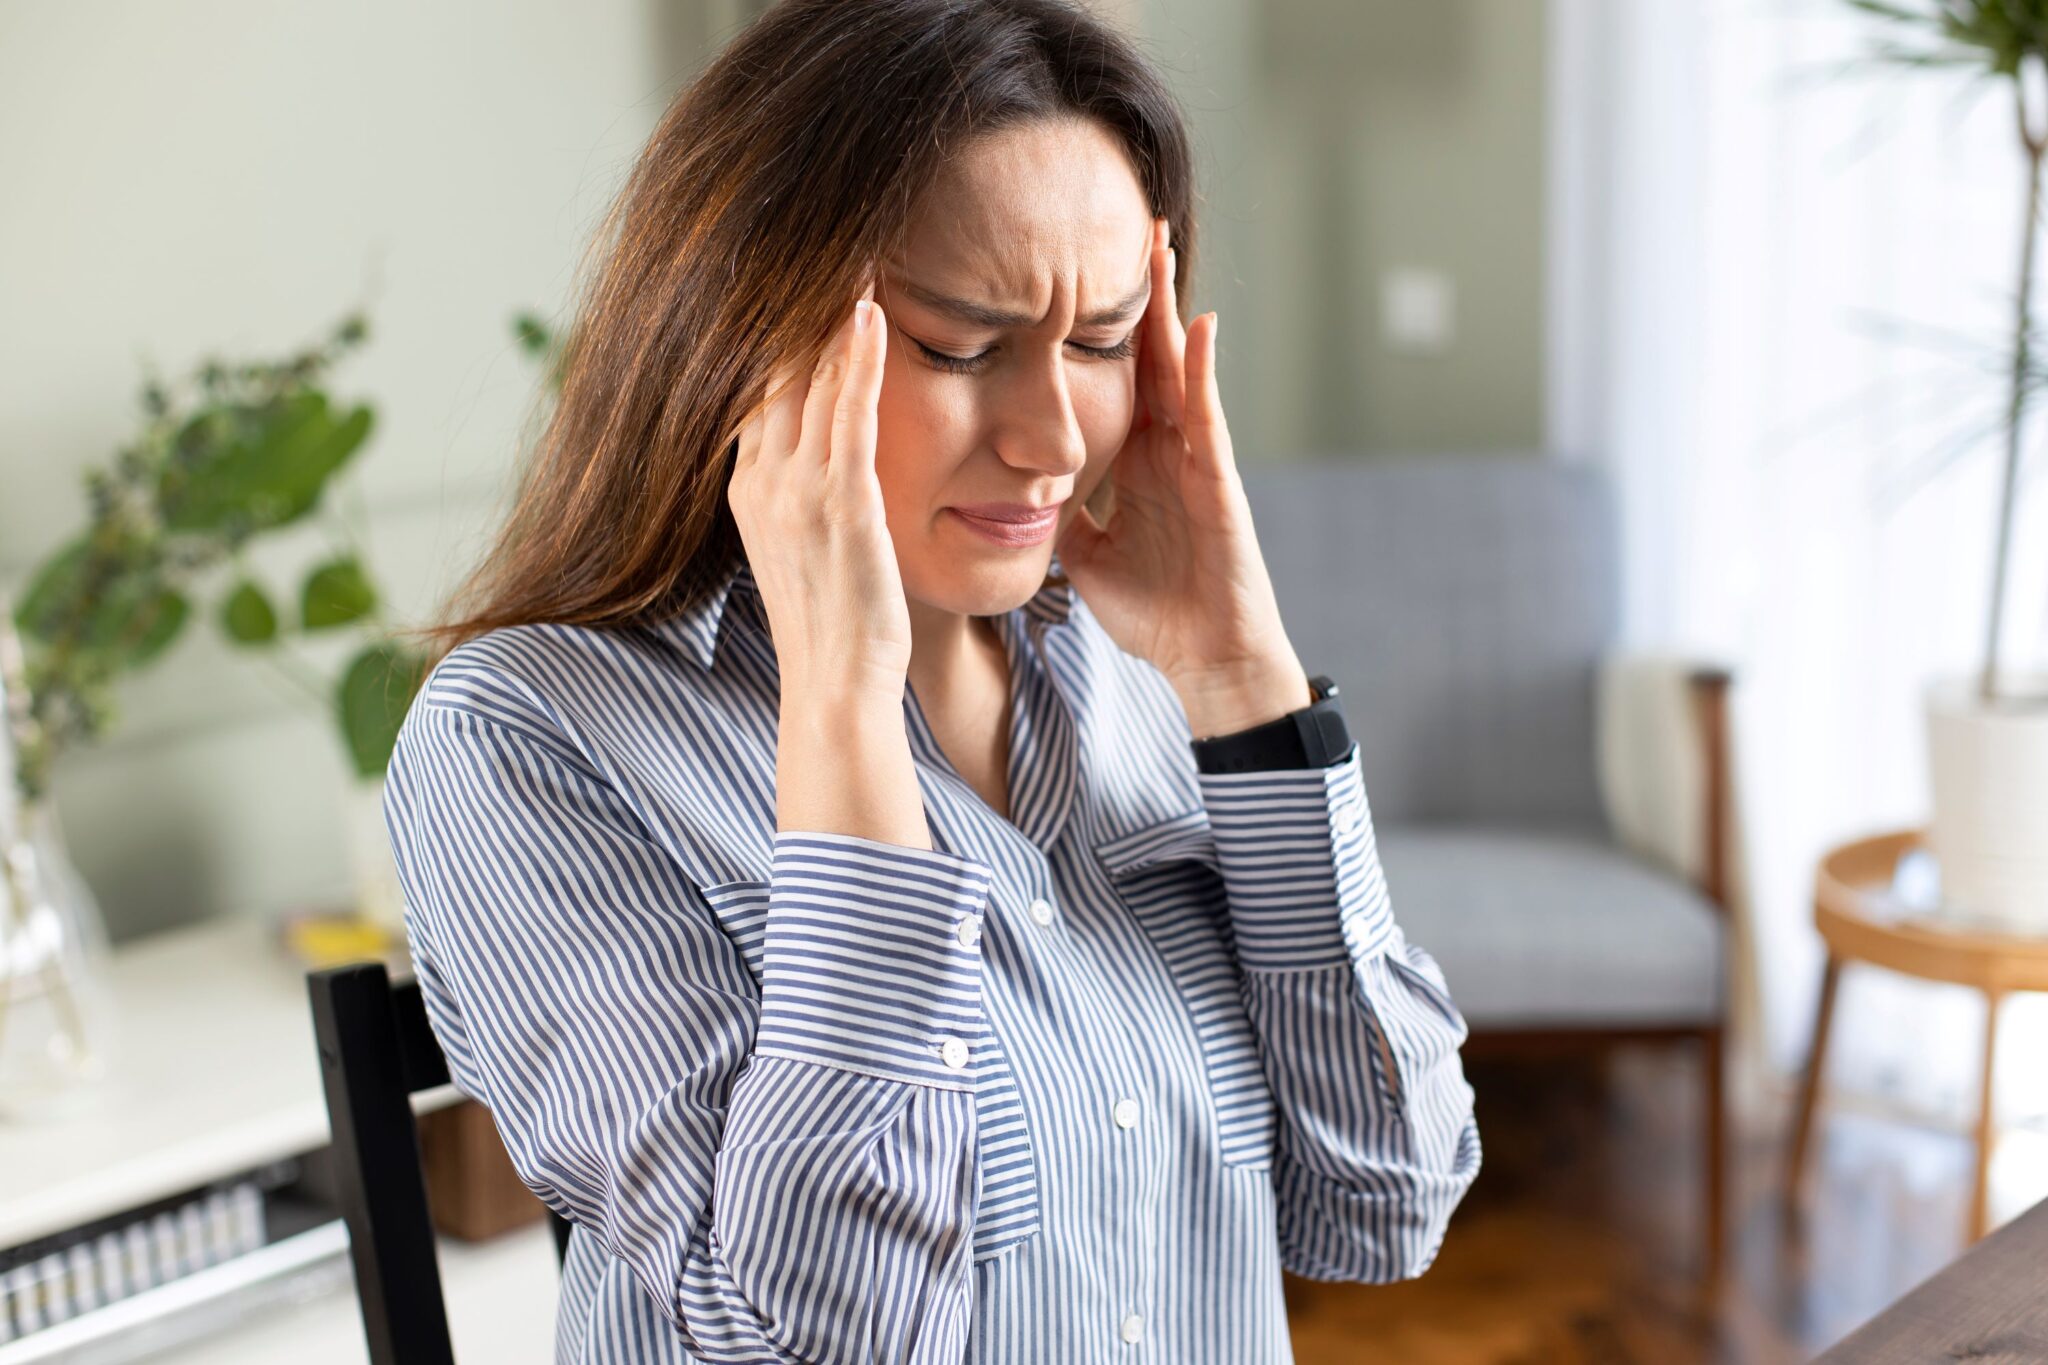 Keni shpesh dhimbje koke pasi keni ngrënë? Kjo mund të tregojë një sëmundje të rëndë